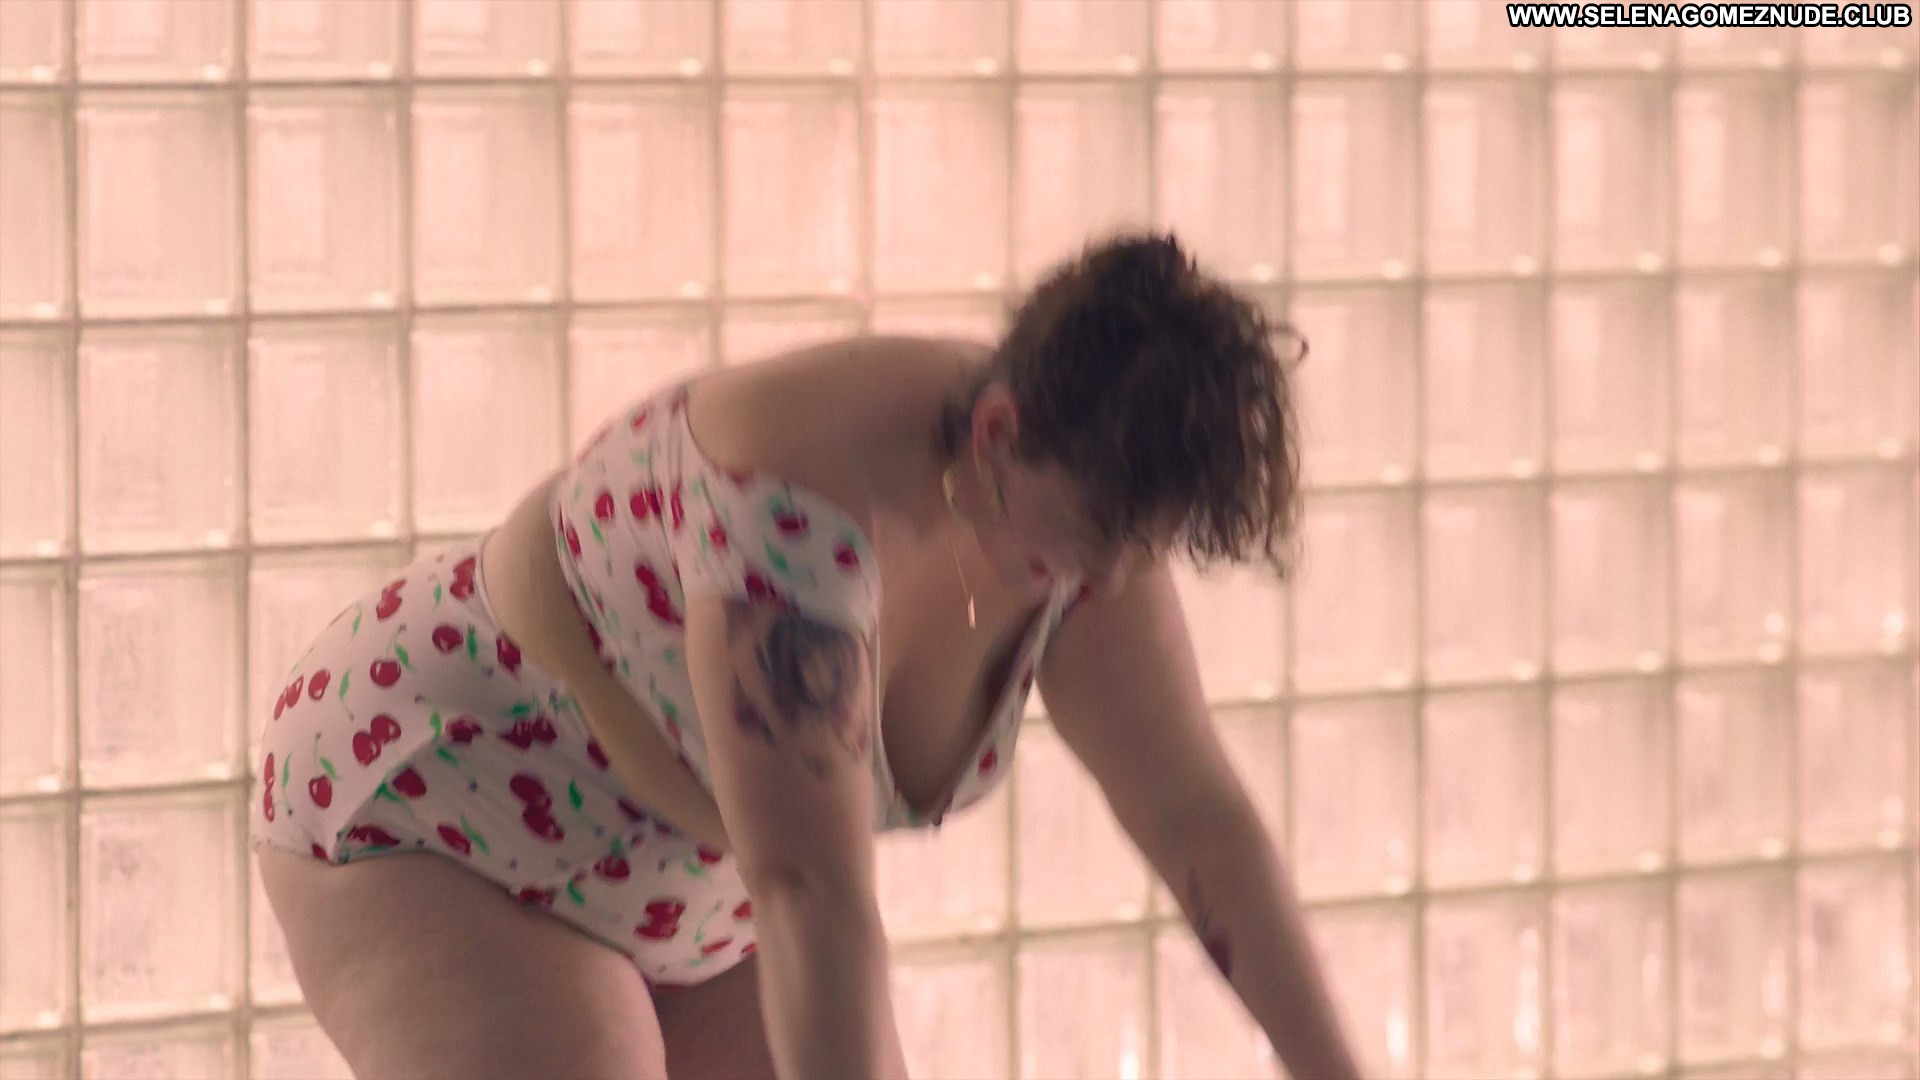 Katie kershaw nude - Katie Kershaw Nude.